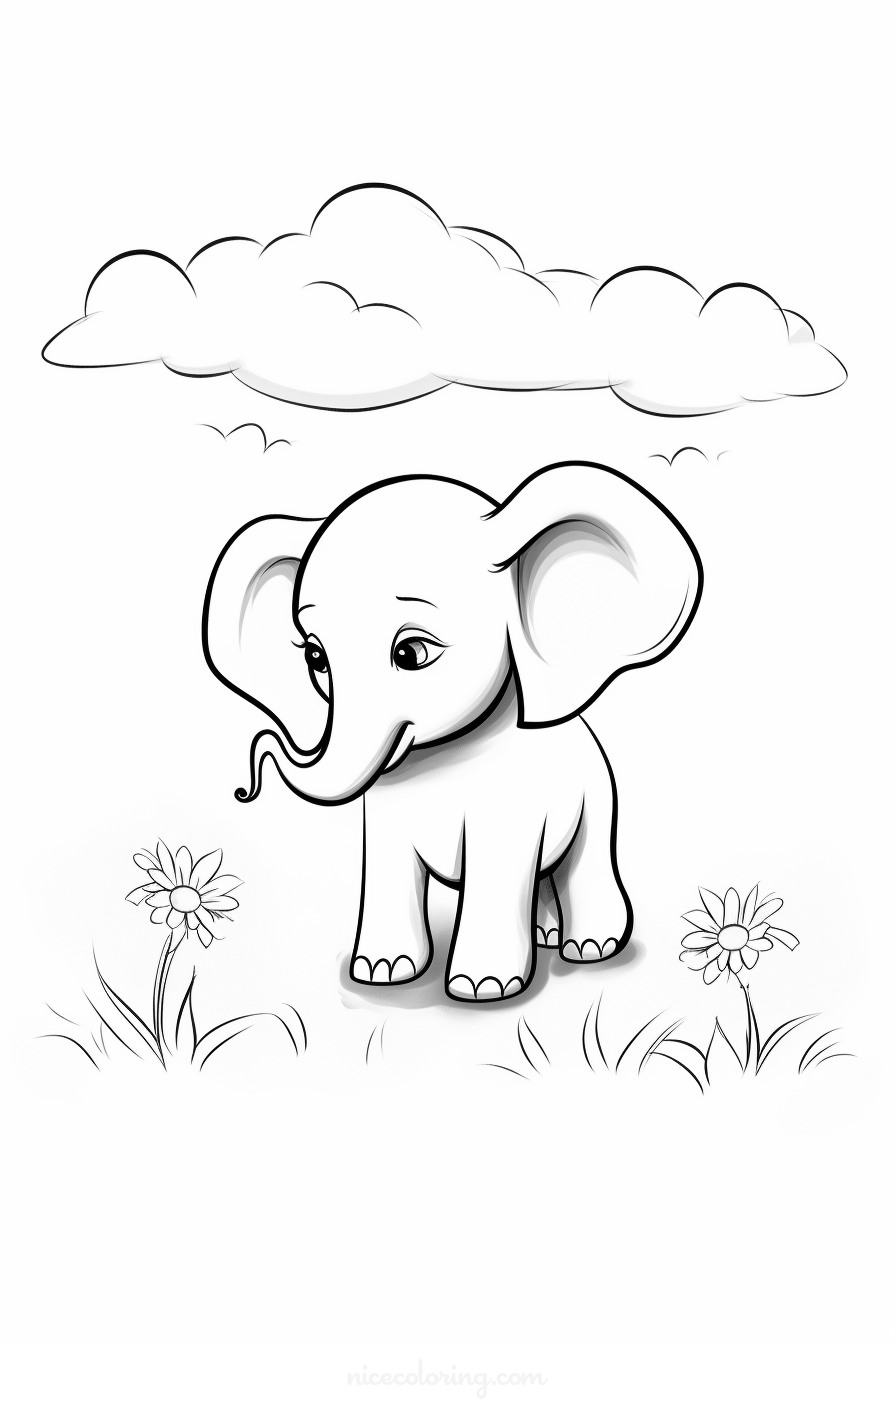 Página de colorear de un elefante en un bosque pacífico